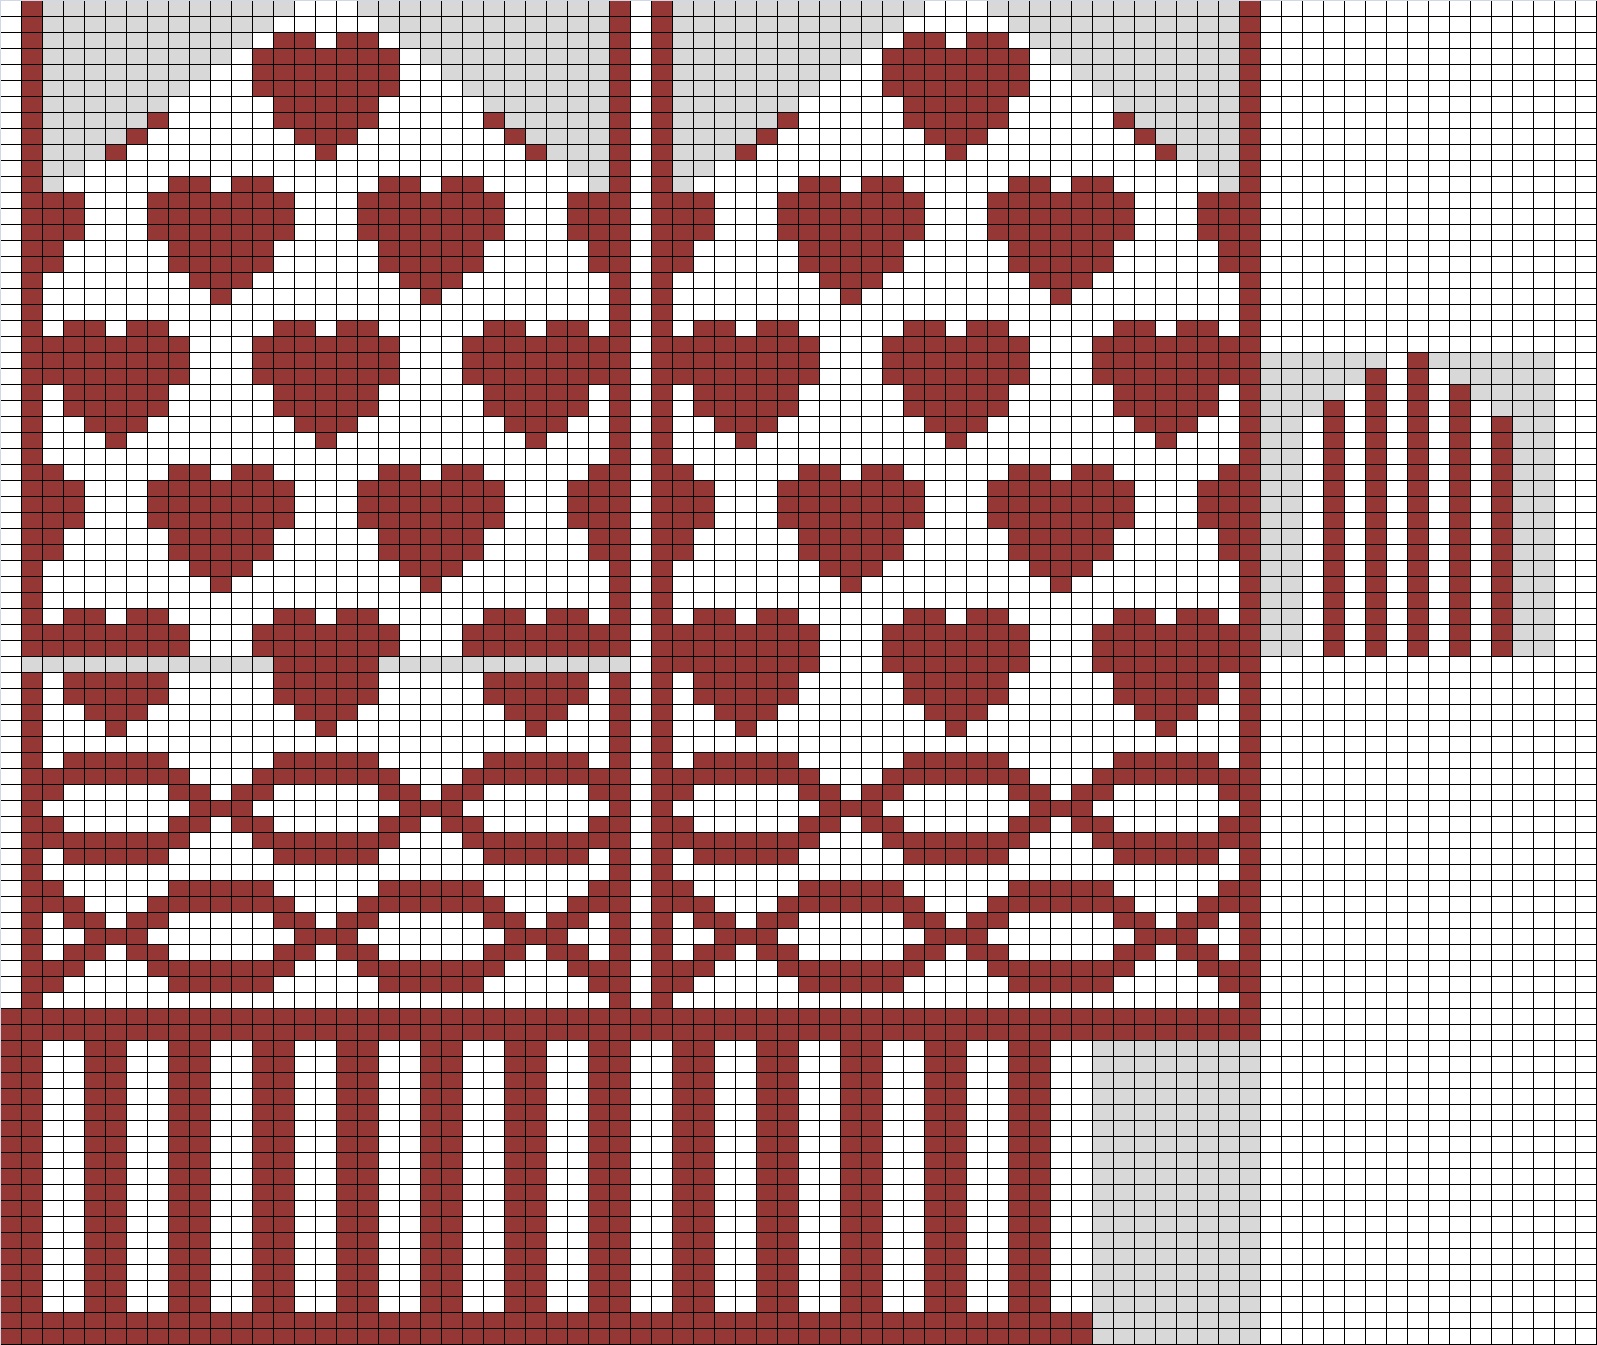 Free Knitting Pattern:
JiffyВ® Easy-Knit Mittens - Lion Brand Yarn